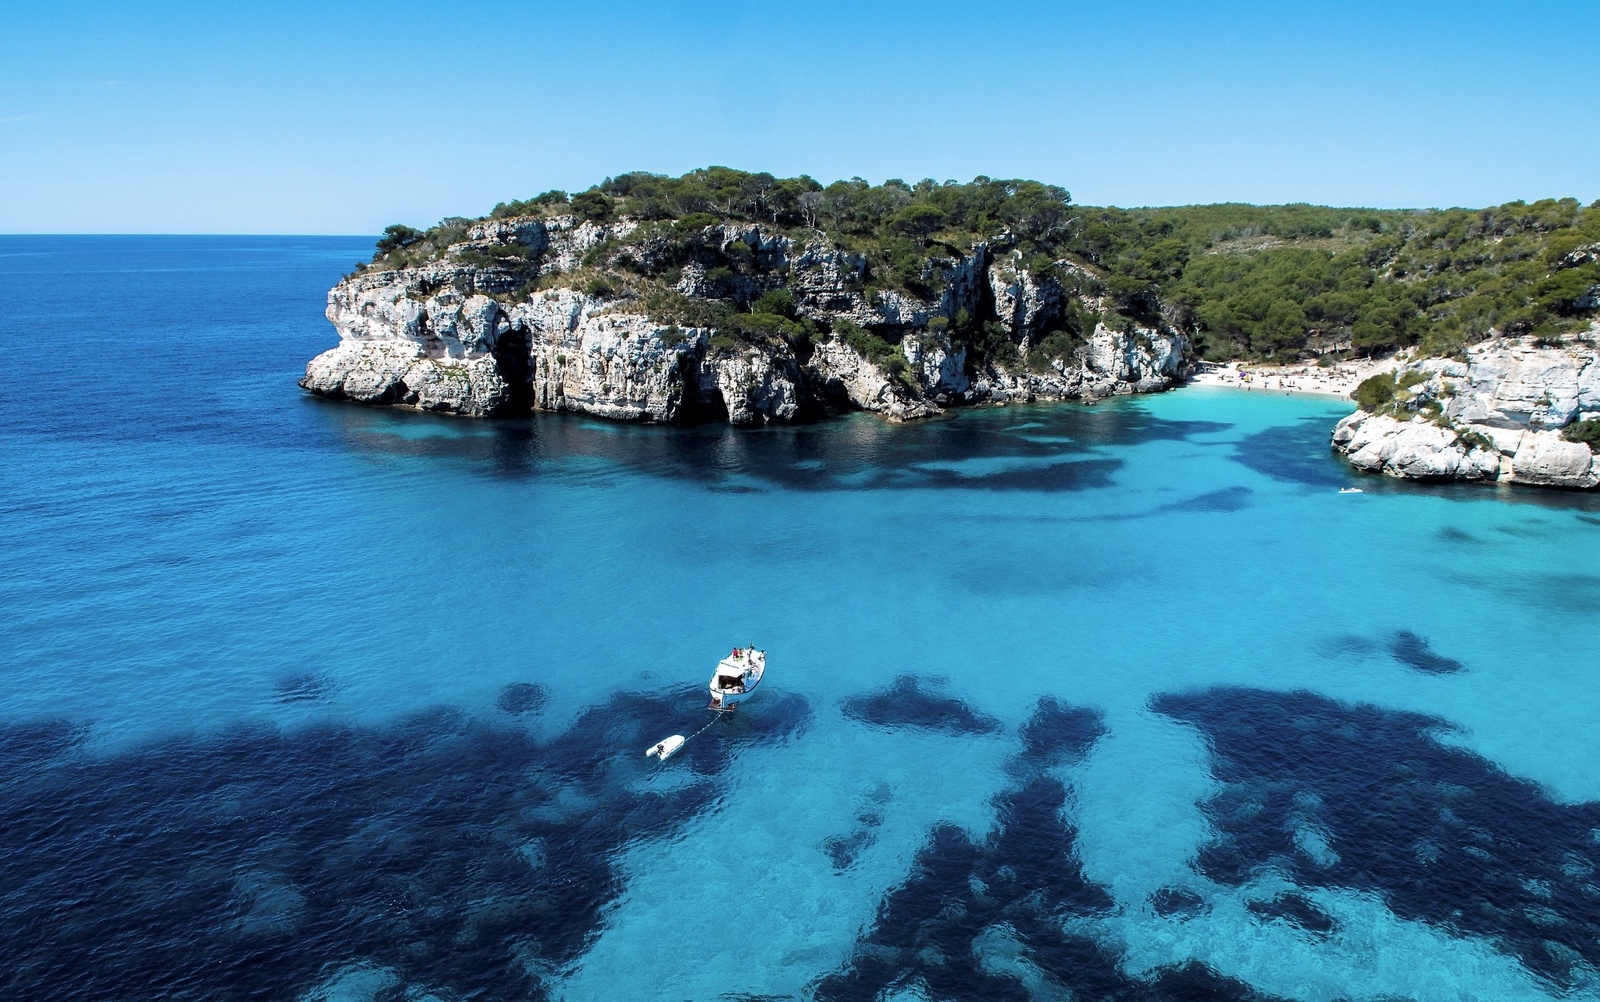 Vikarna och stränderna på den södra delen av Menorca är många, jungfruliga och med vit sand.
Foto: Jörgen Ulvsgärd